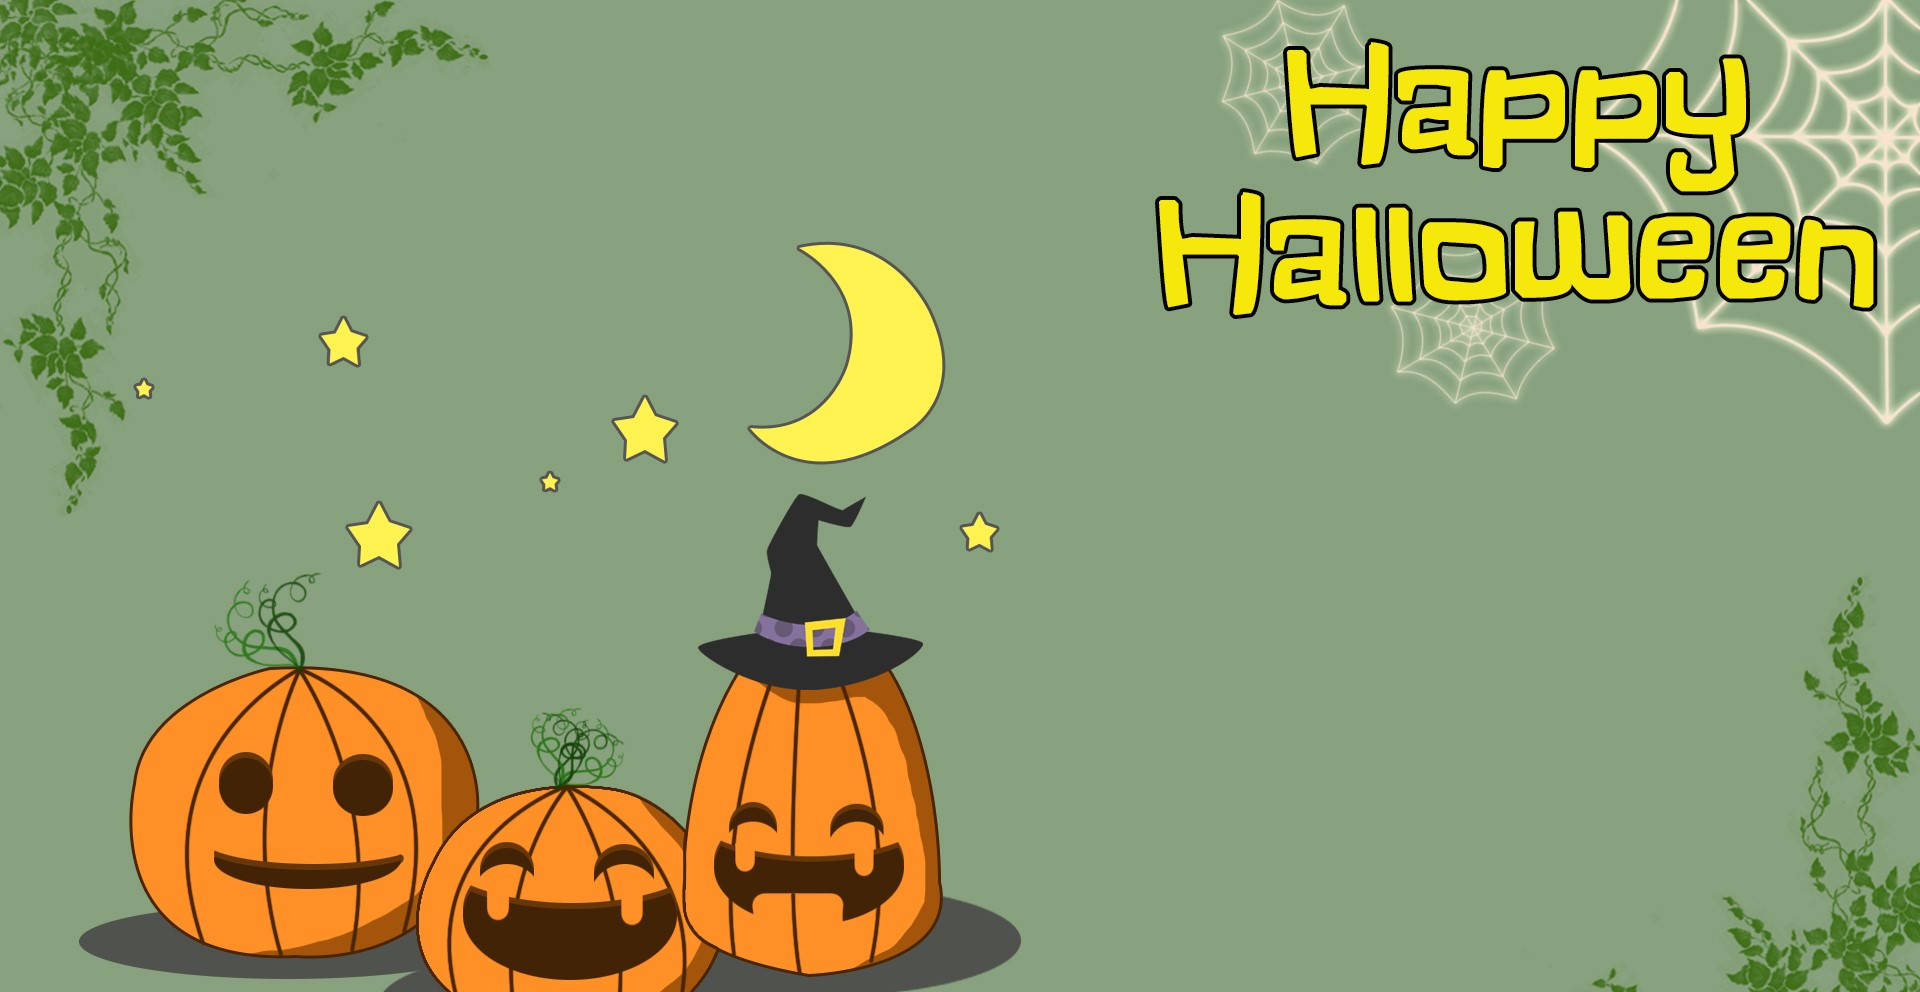 Spooky Halloween Fun!